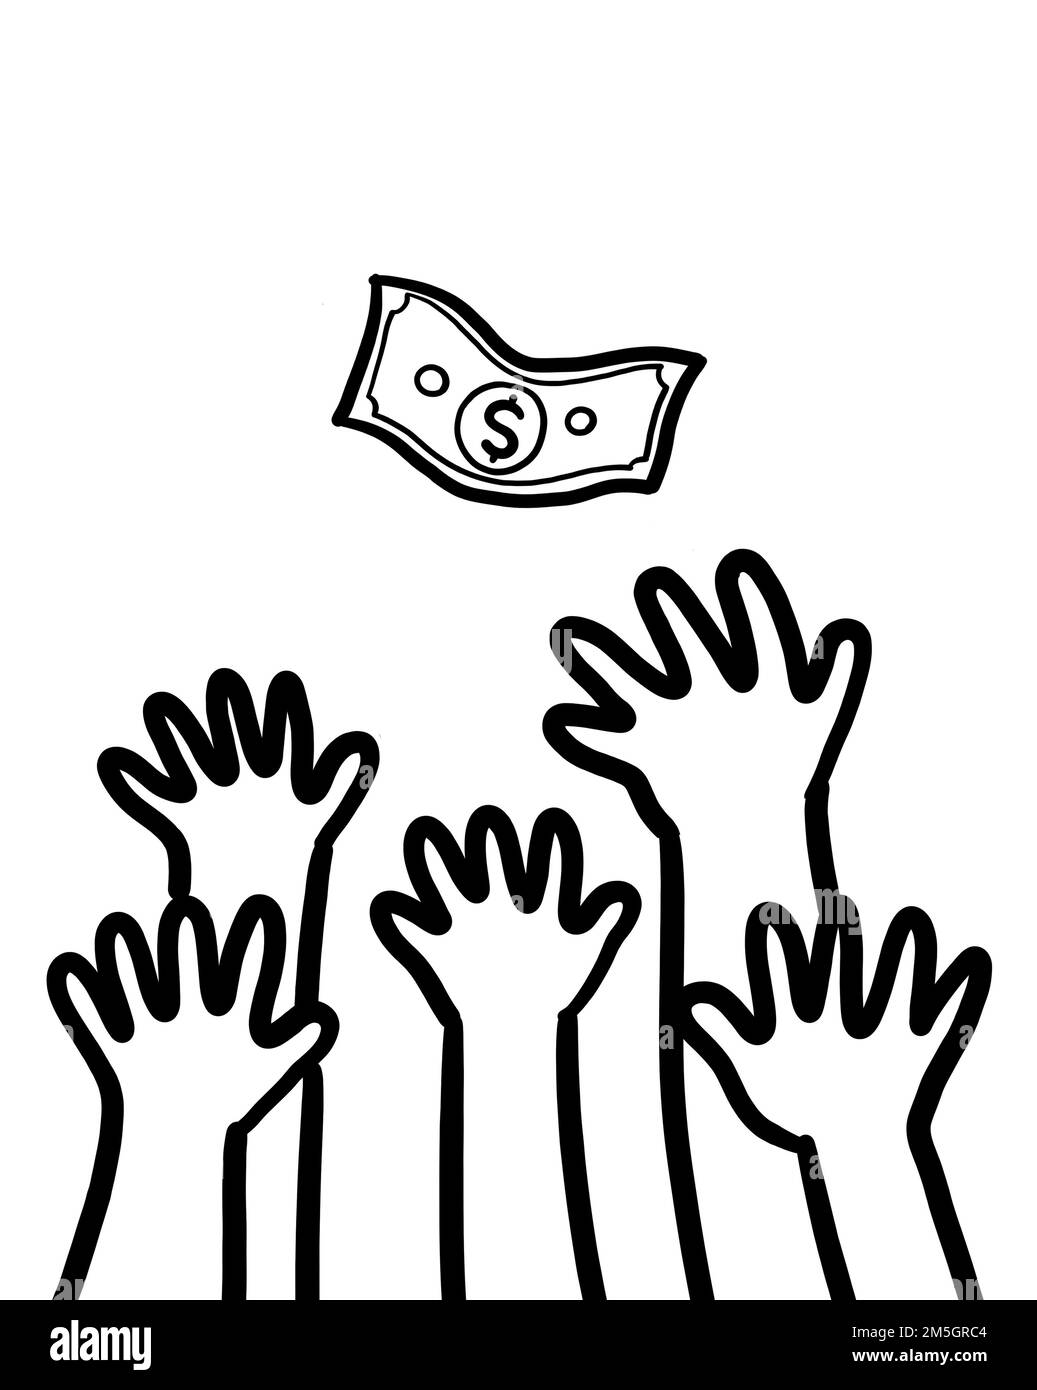 Eine Gruppe von Menschenhänden, die nach einem Dollar greifen. Erfolg finanzielle Freiheit Chance in der Gesellschaft. Stockfoto